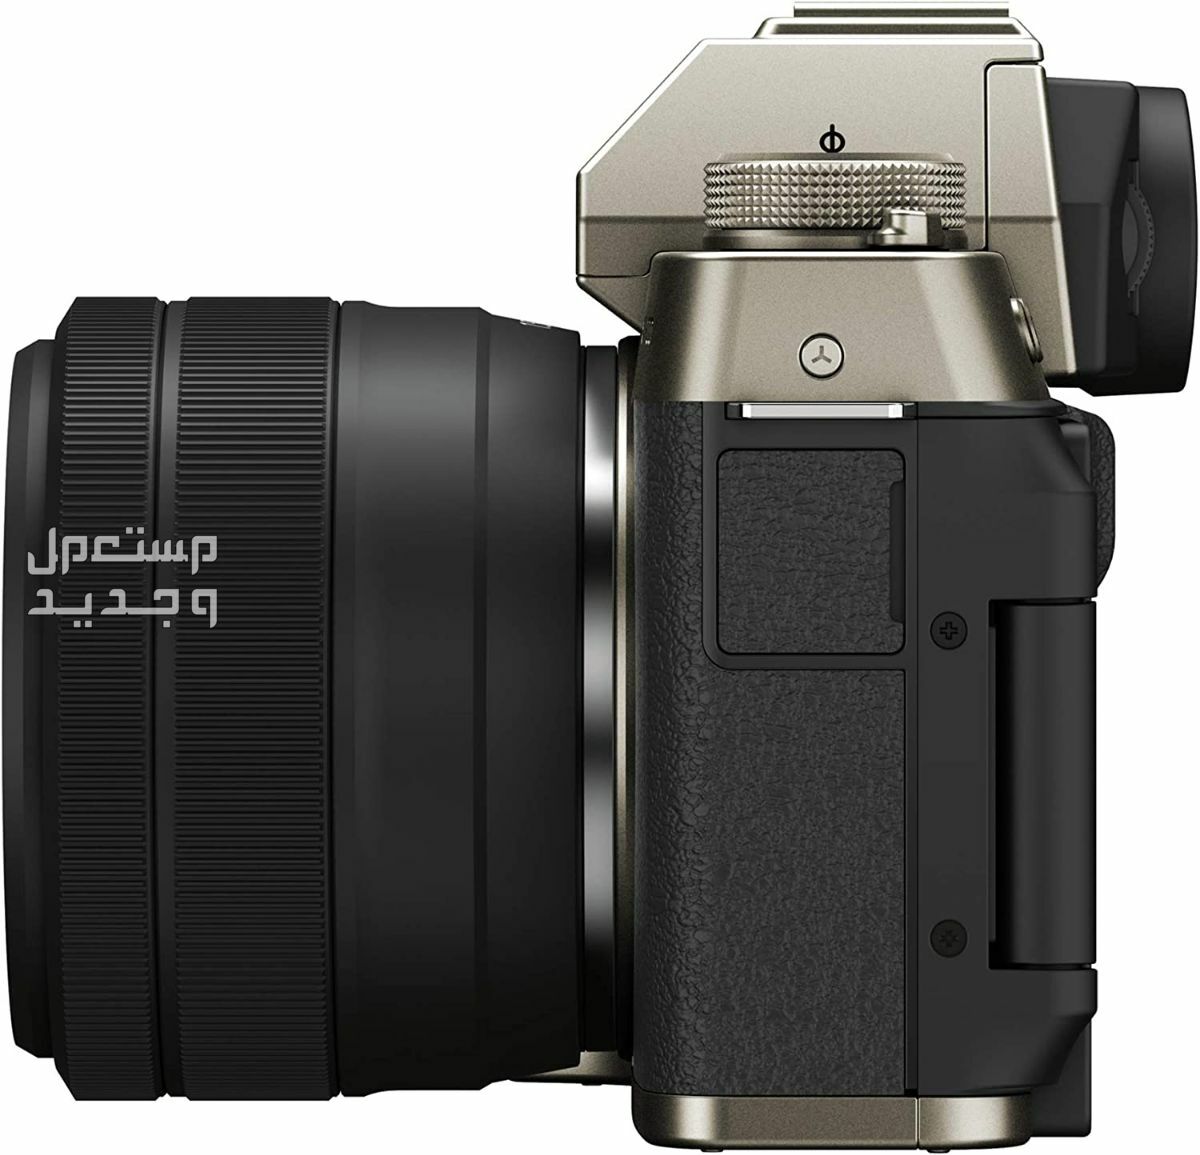 10 كاميرات تصوير ماركات عالمية بأسعار رخيصة في مصر سعر كاميرا Fujifilm X-T200